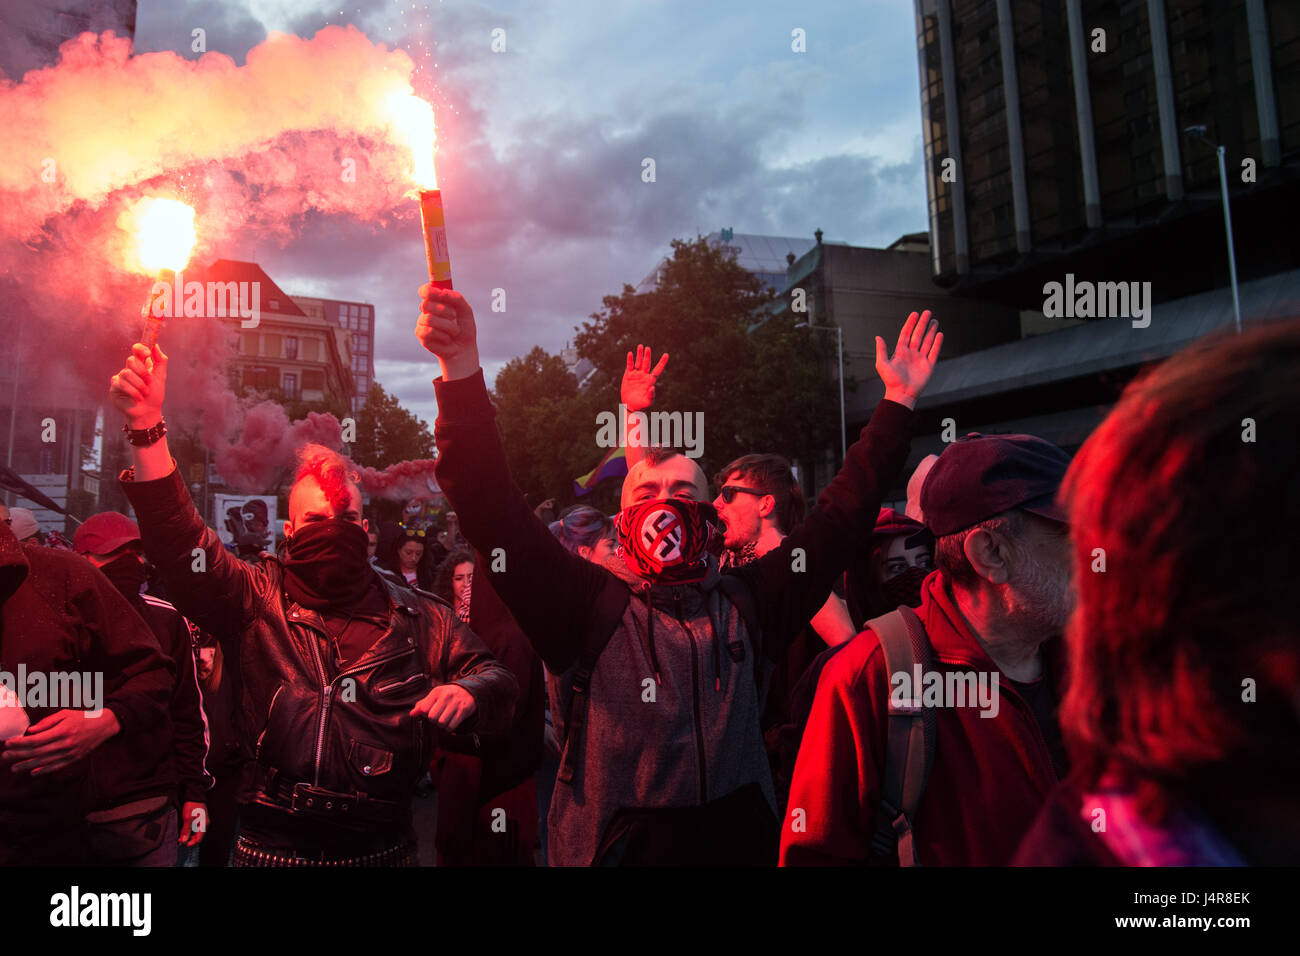 Madrid, Spagna. 13 Maggio, 2017. L'ala sinistra manifestanti con razzi durante una dimostrazione contro di estrema destra gruppo "Hogar Social" e il loro nuovo edificio occupato a Madrid, Spagna. Credito: Marcos del Mazo/Alamy Live News Foto Stock